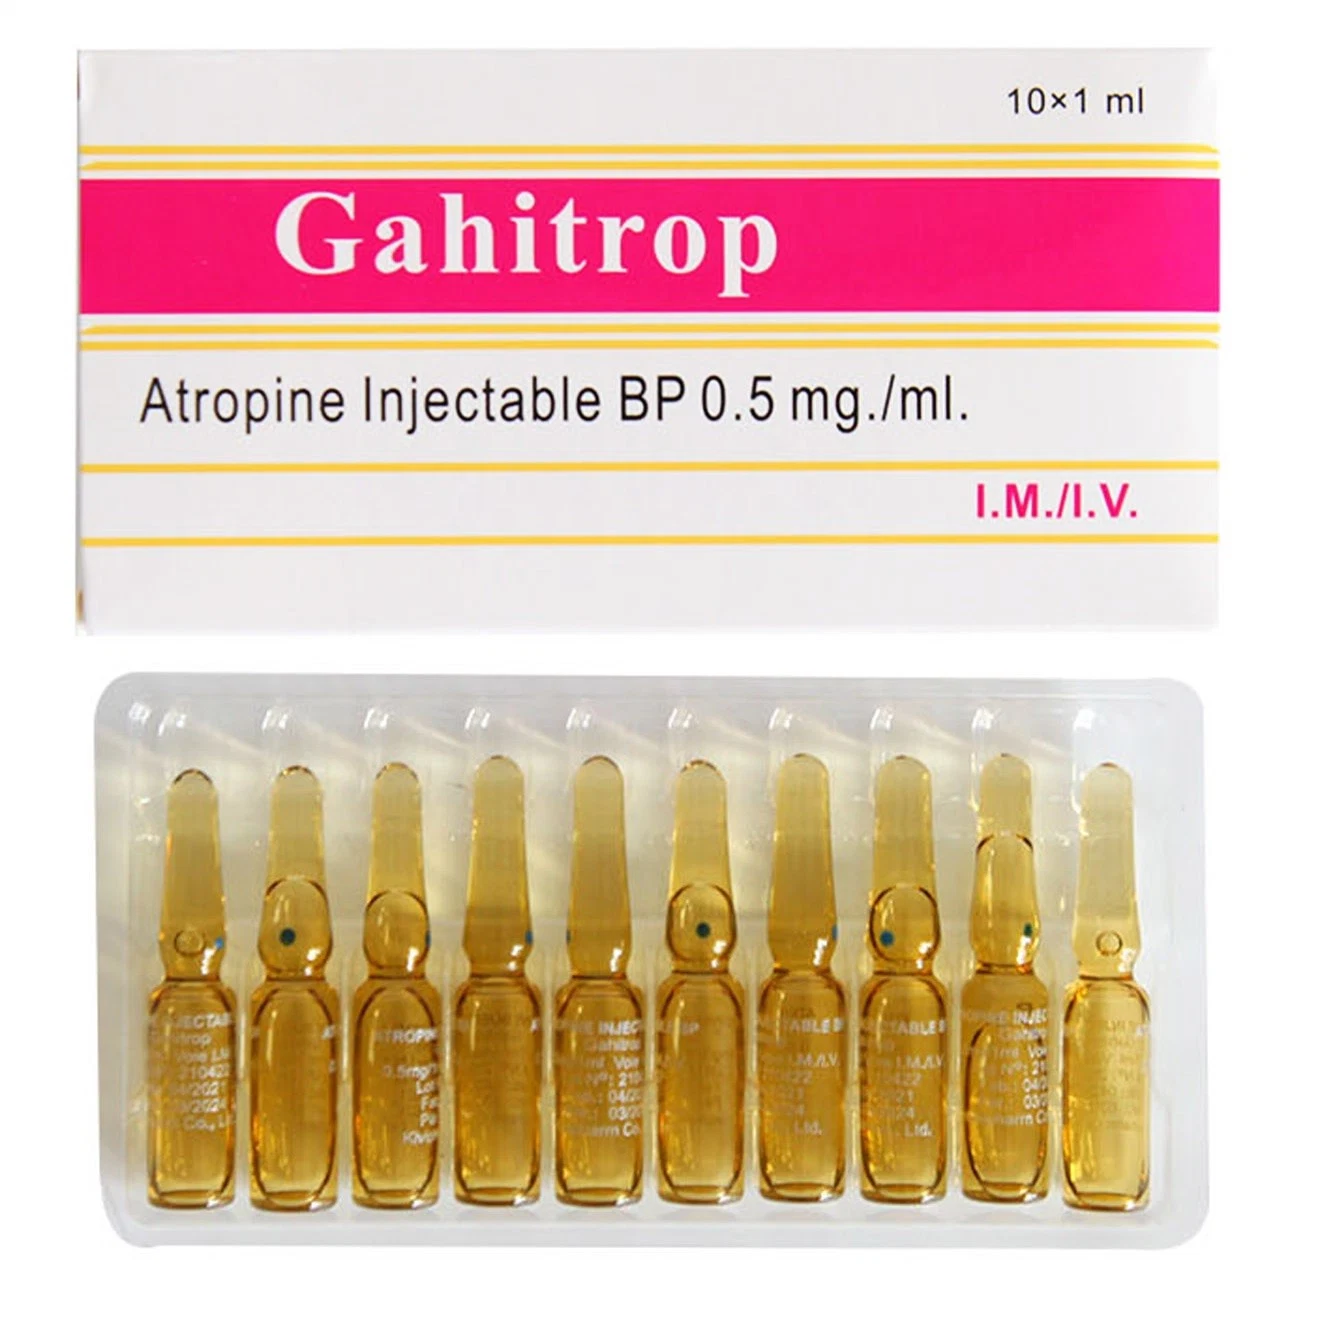 Atropine Injection Pharmaceutical Medicine